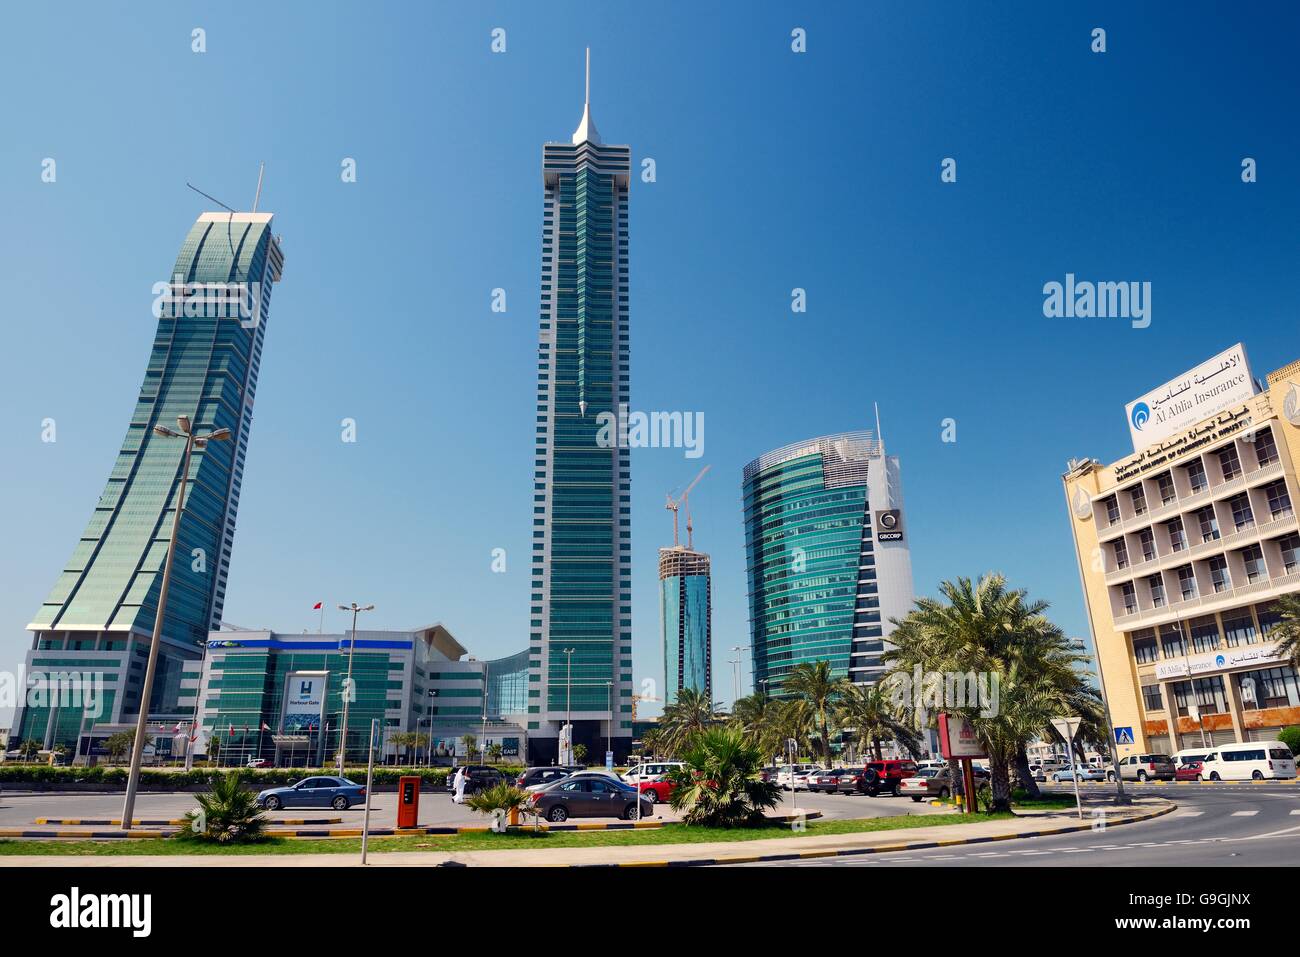 Puerto financiero de Bahrein bfh desarrollo en Manama, la capital moderna de Bahrein. comercial las torres este y oeste y gb corp Foto de stock